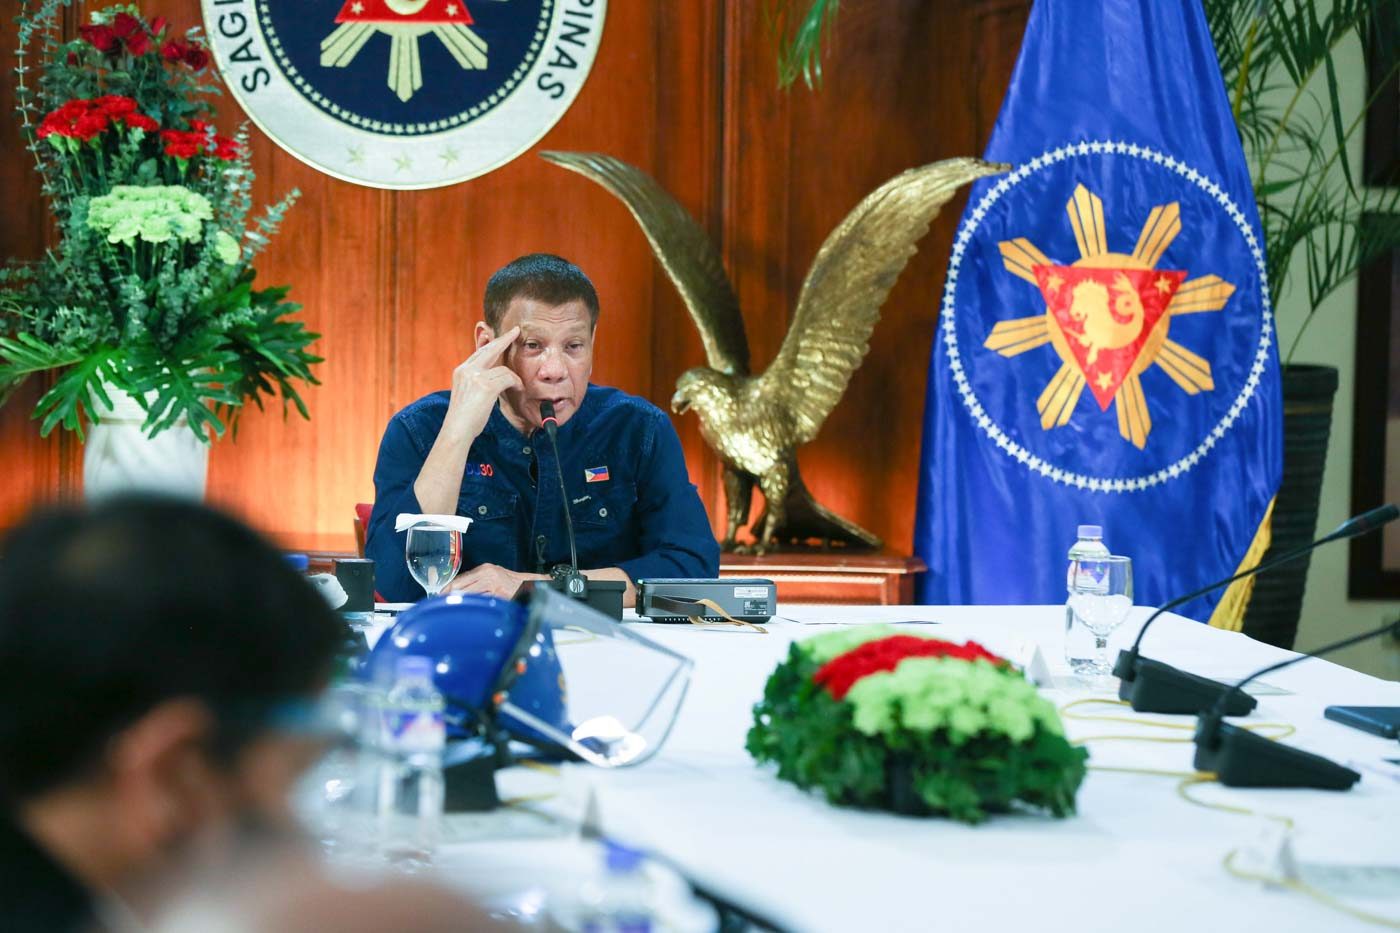 Military will distribute coronavirus vaccine, says Duterte